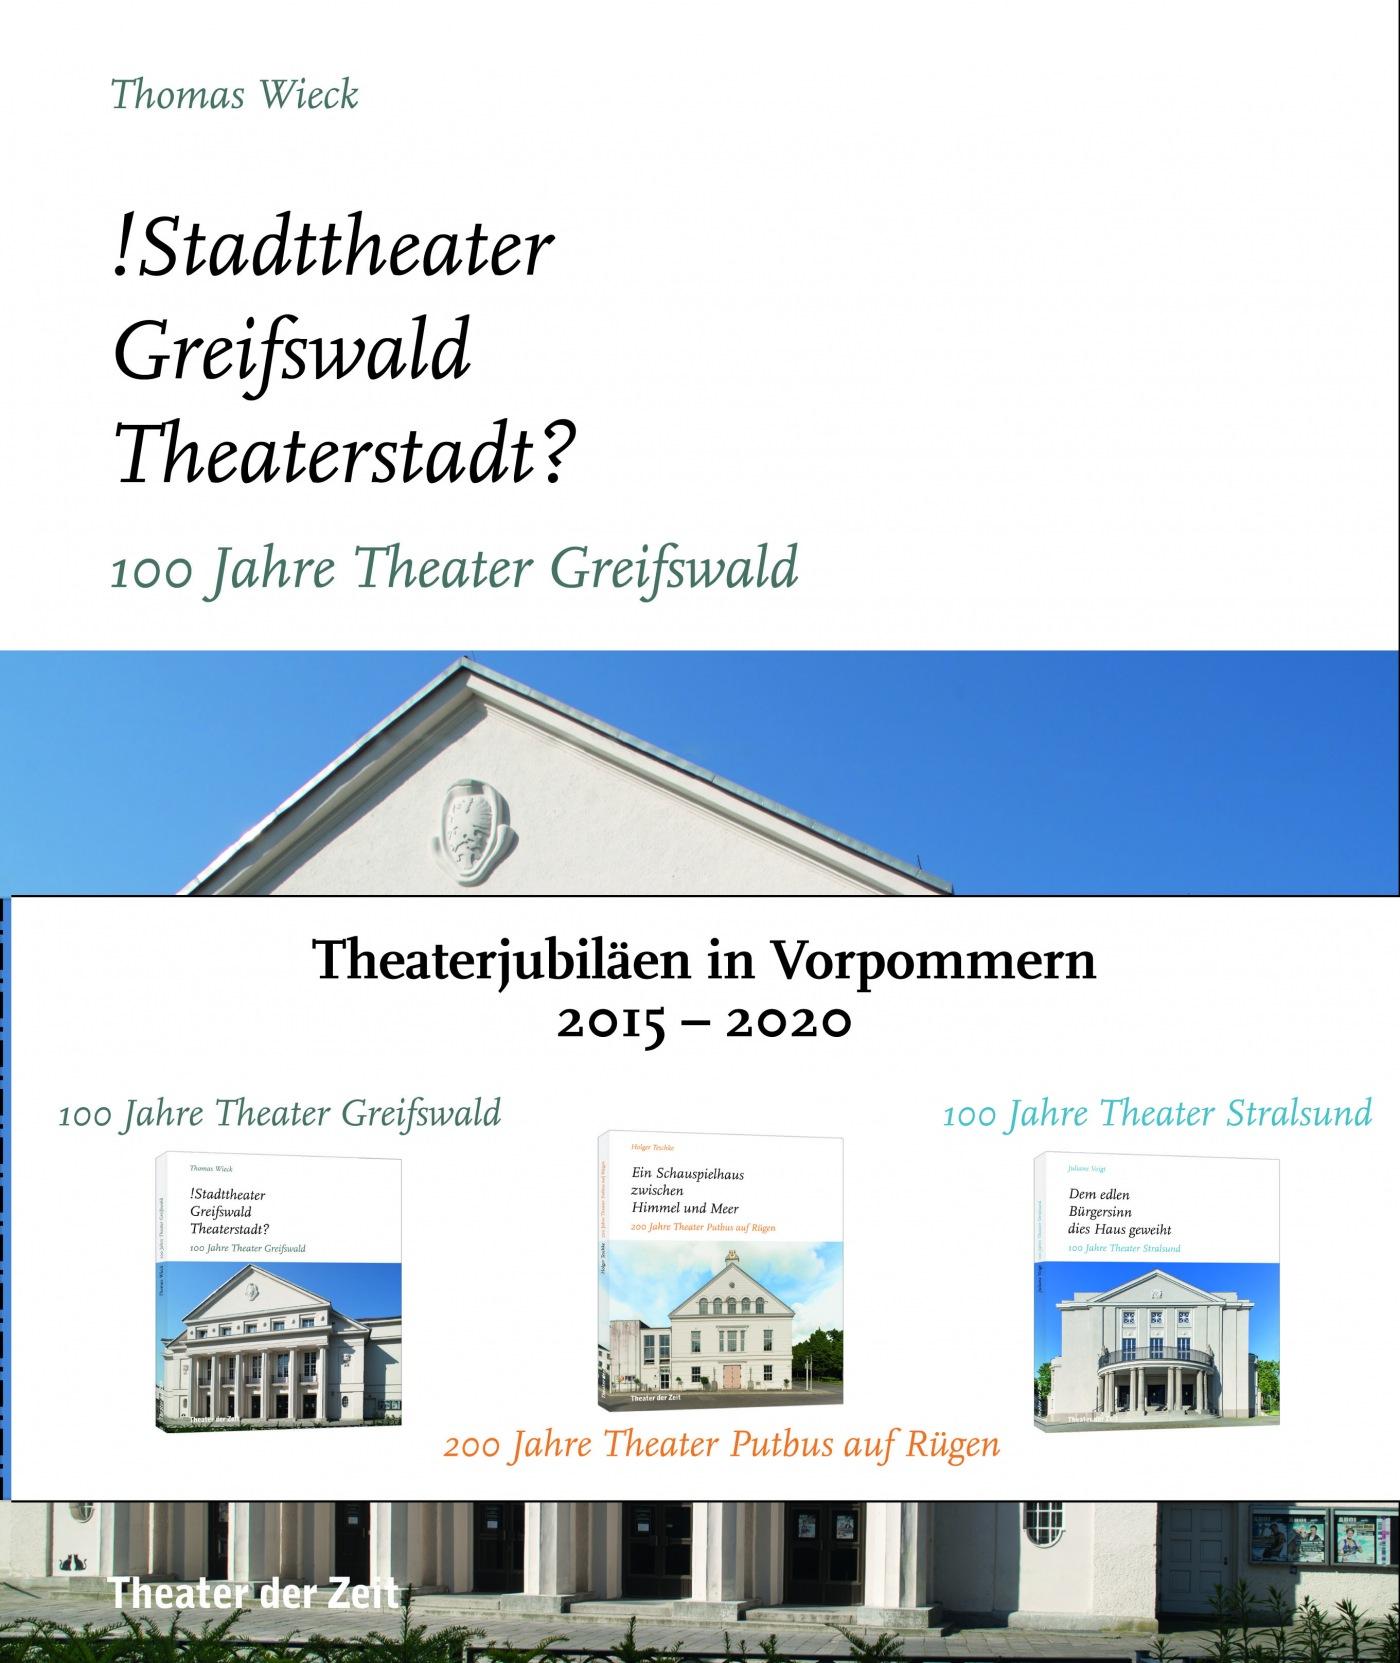 "Theaterjubiläen in Vorpommern"